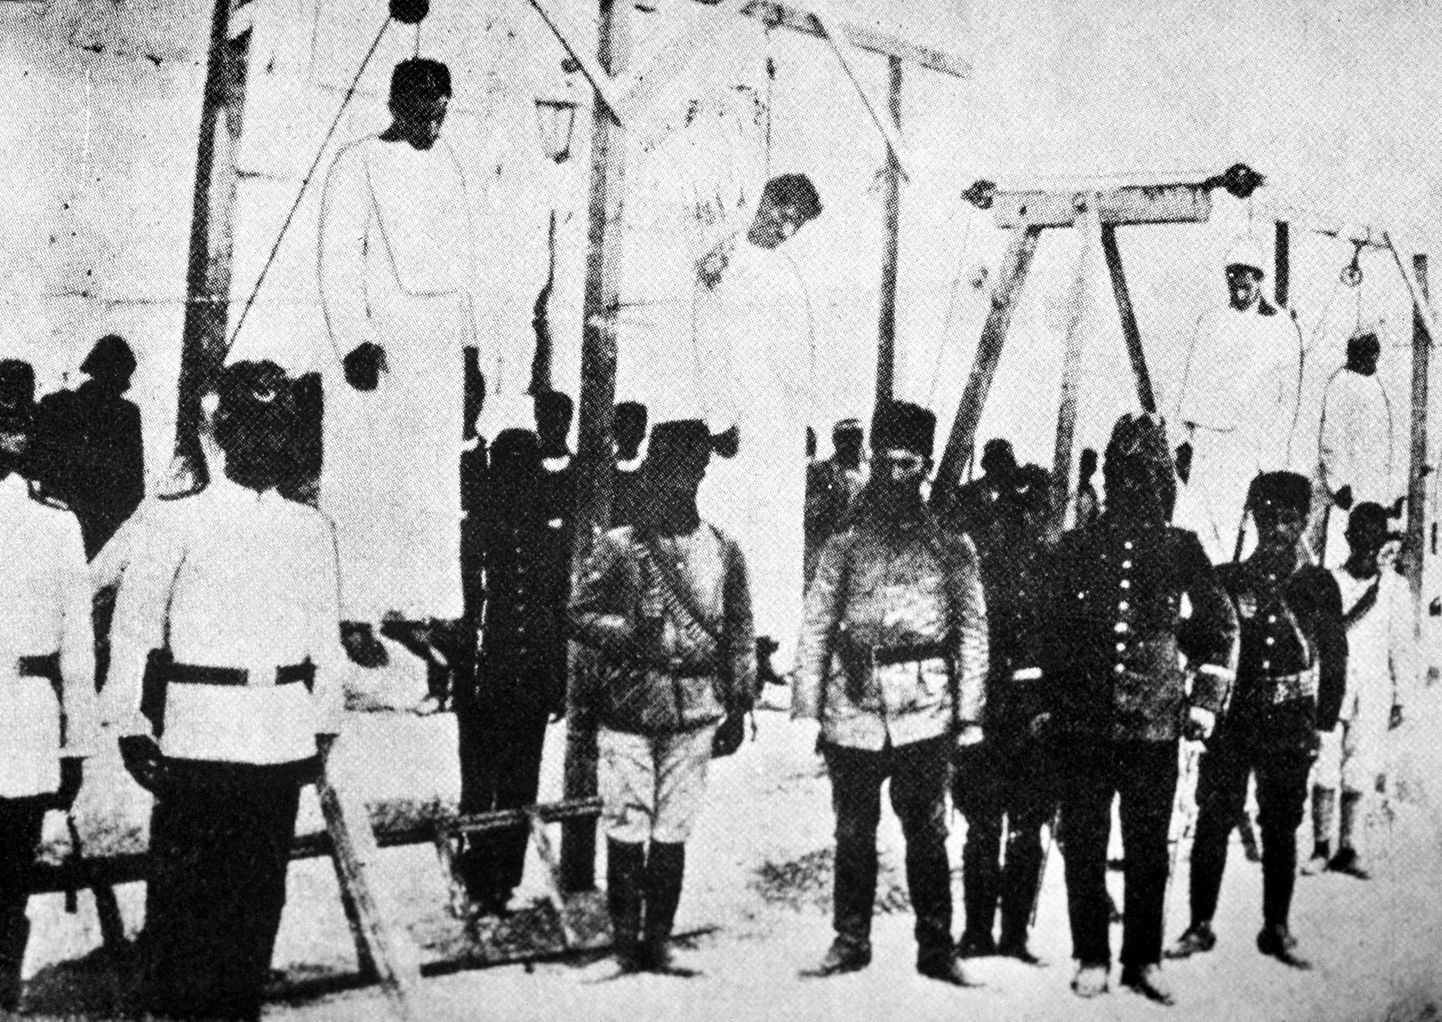 Osmani sõdurid 1915. aastal poseerimas poodud armeenlaste taustal.